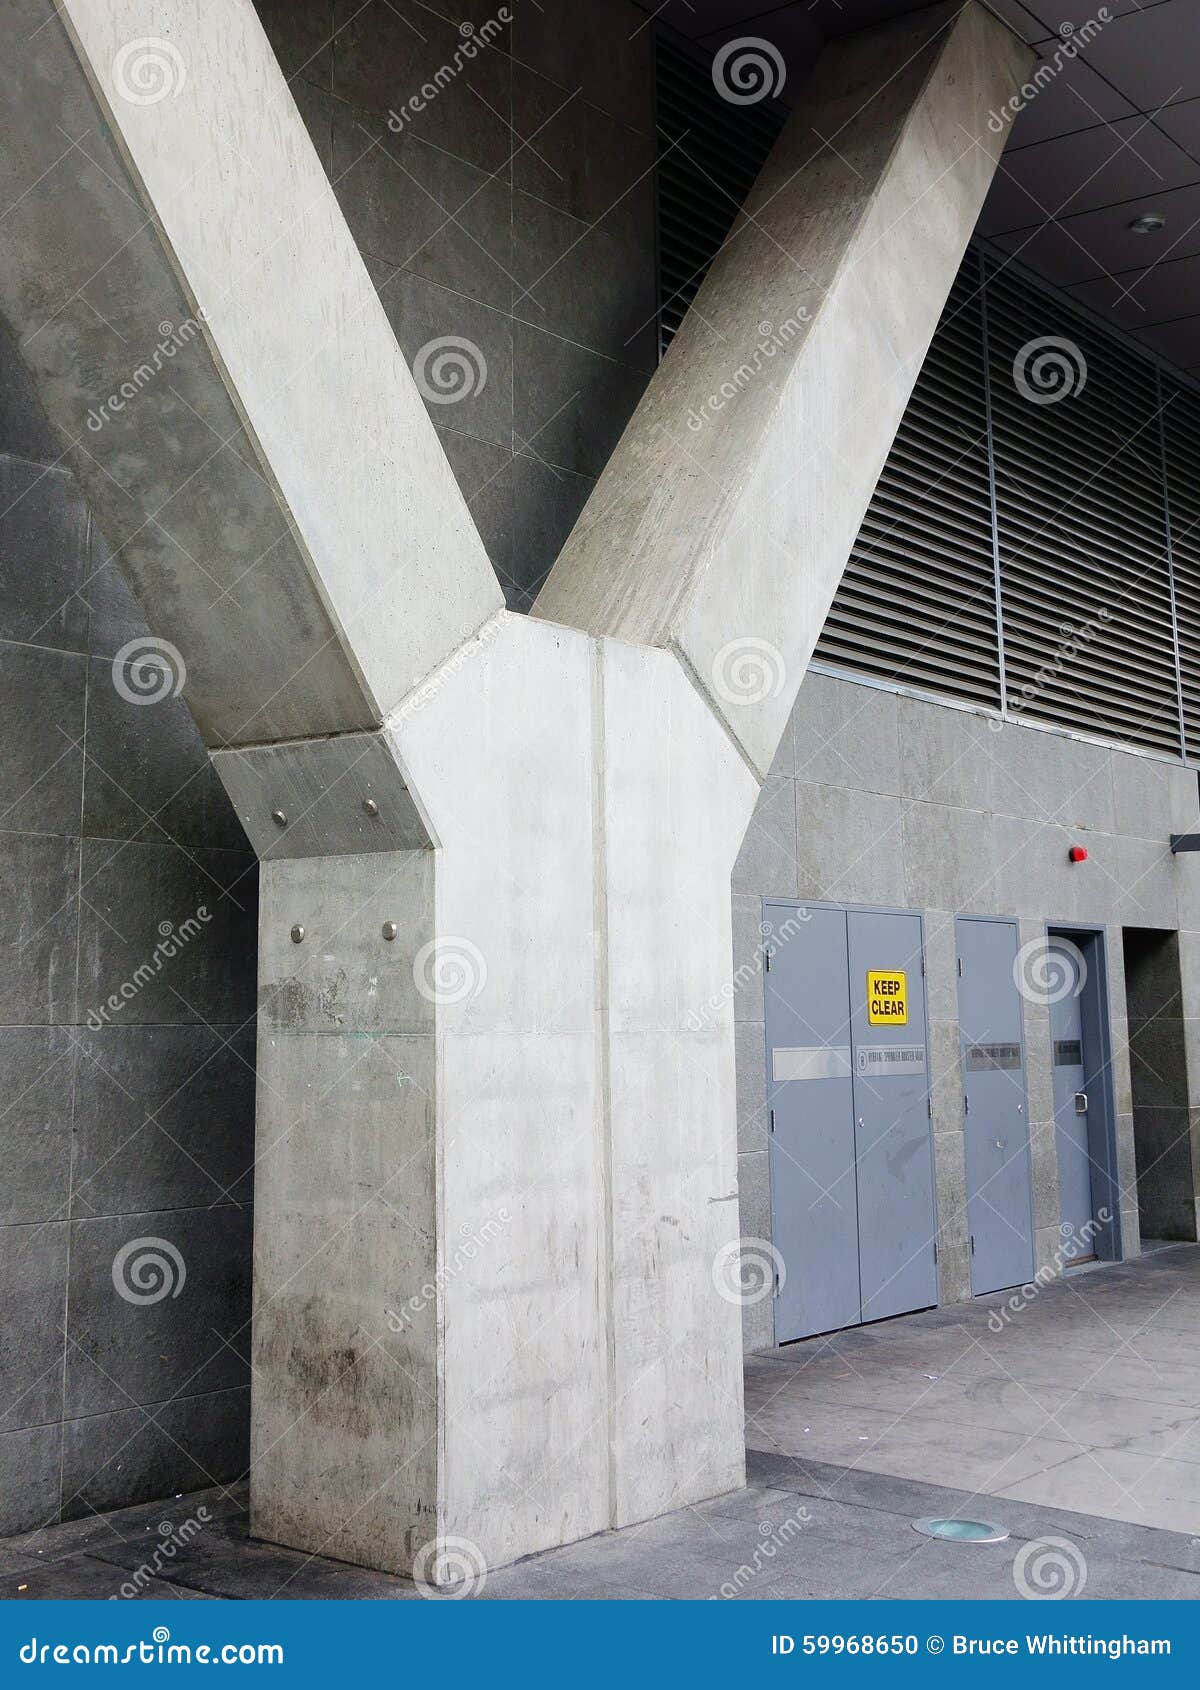 concrete building buttress